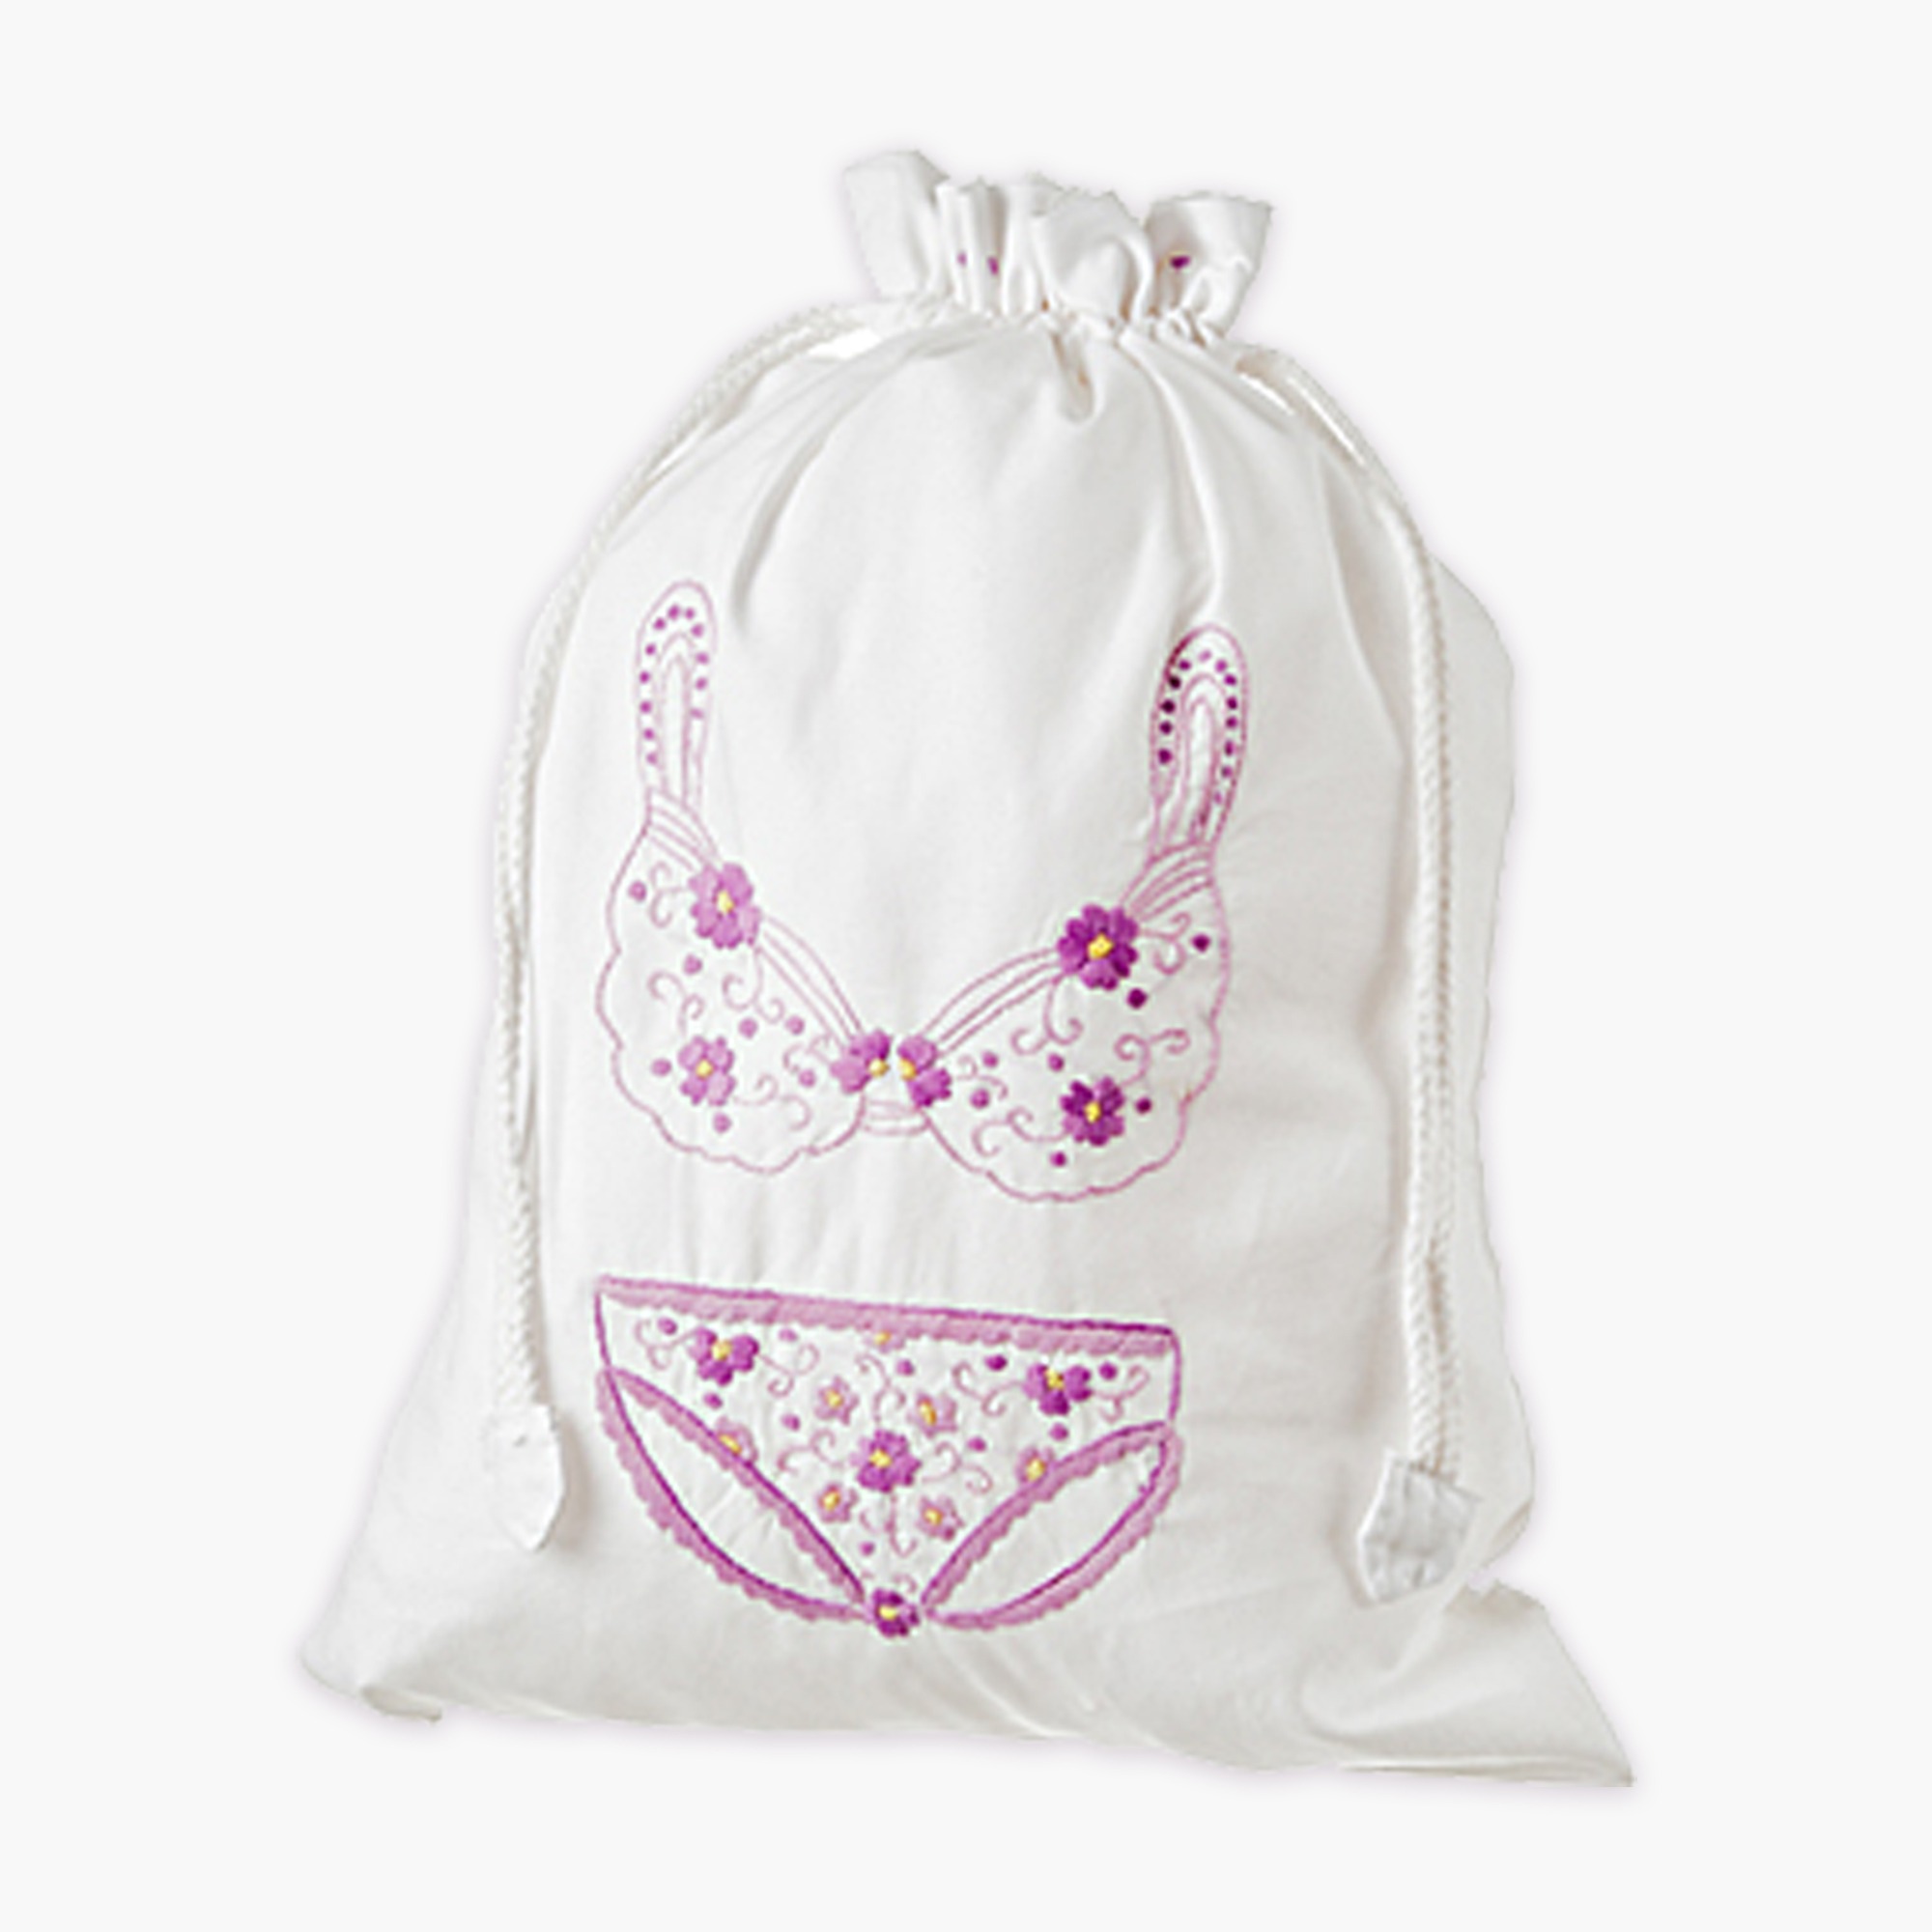 White Cotton Lingerie Drawstring Bag For Sale